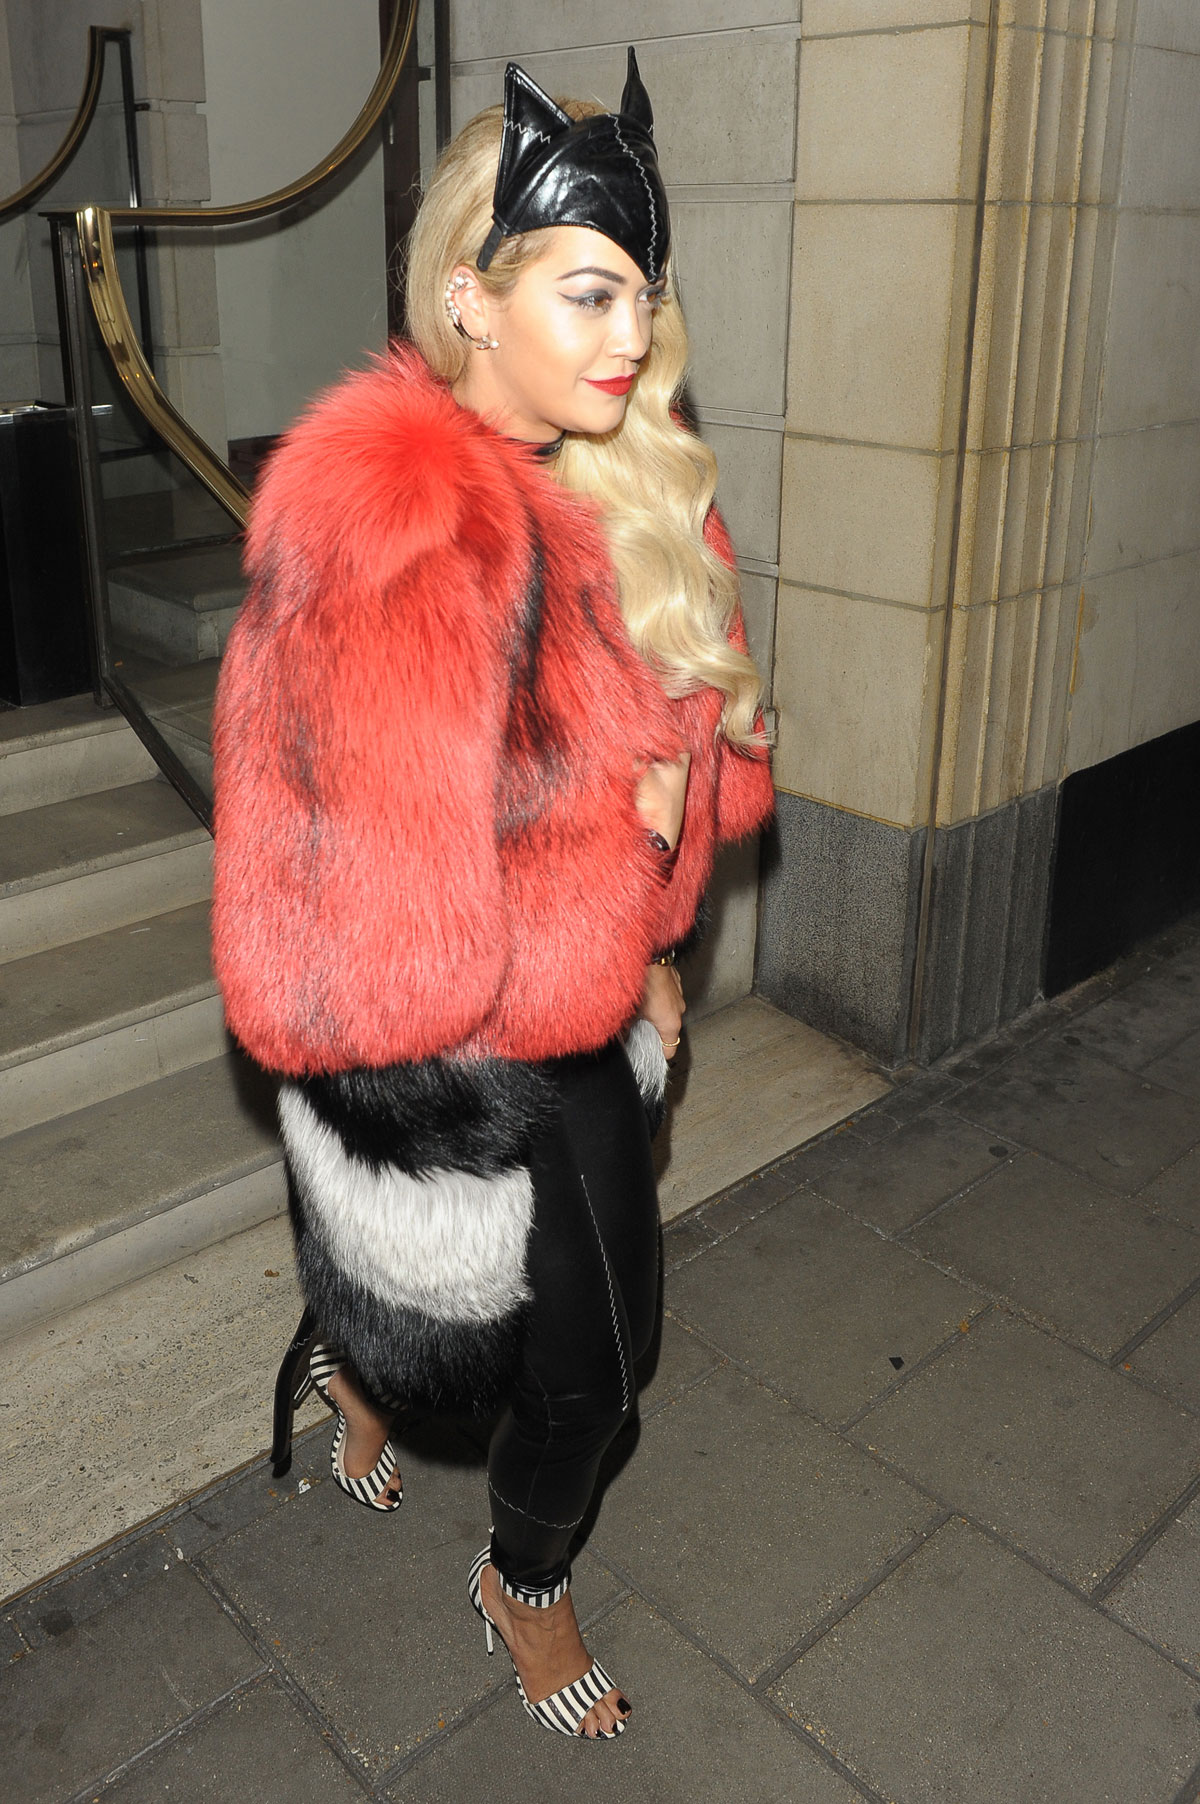 Rita Ora at Chakana and arriving at The Dorchester